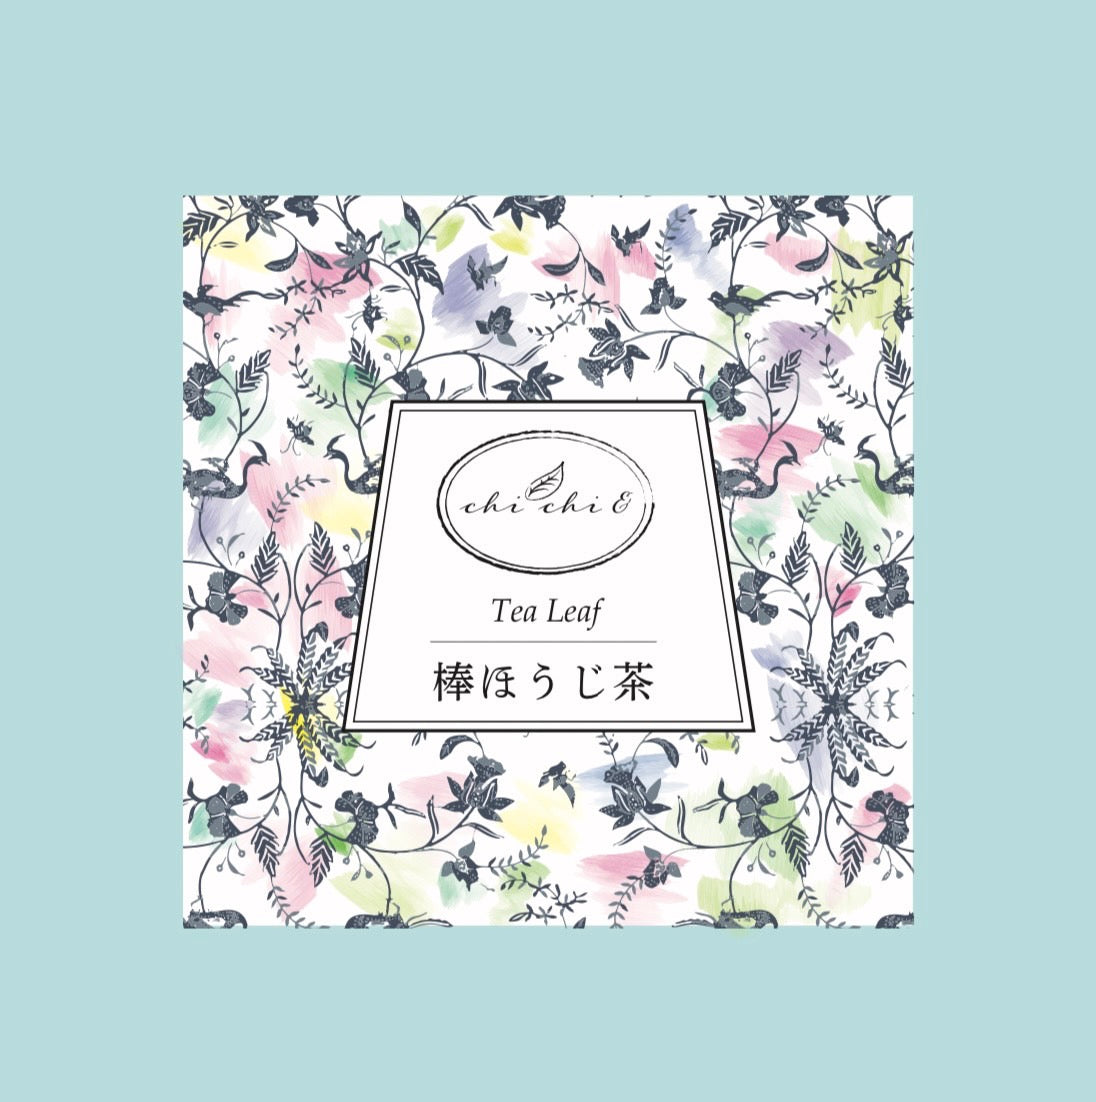 セレクト日本茶〗棒ほうじ茶 – chichi& Tea Atelier